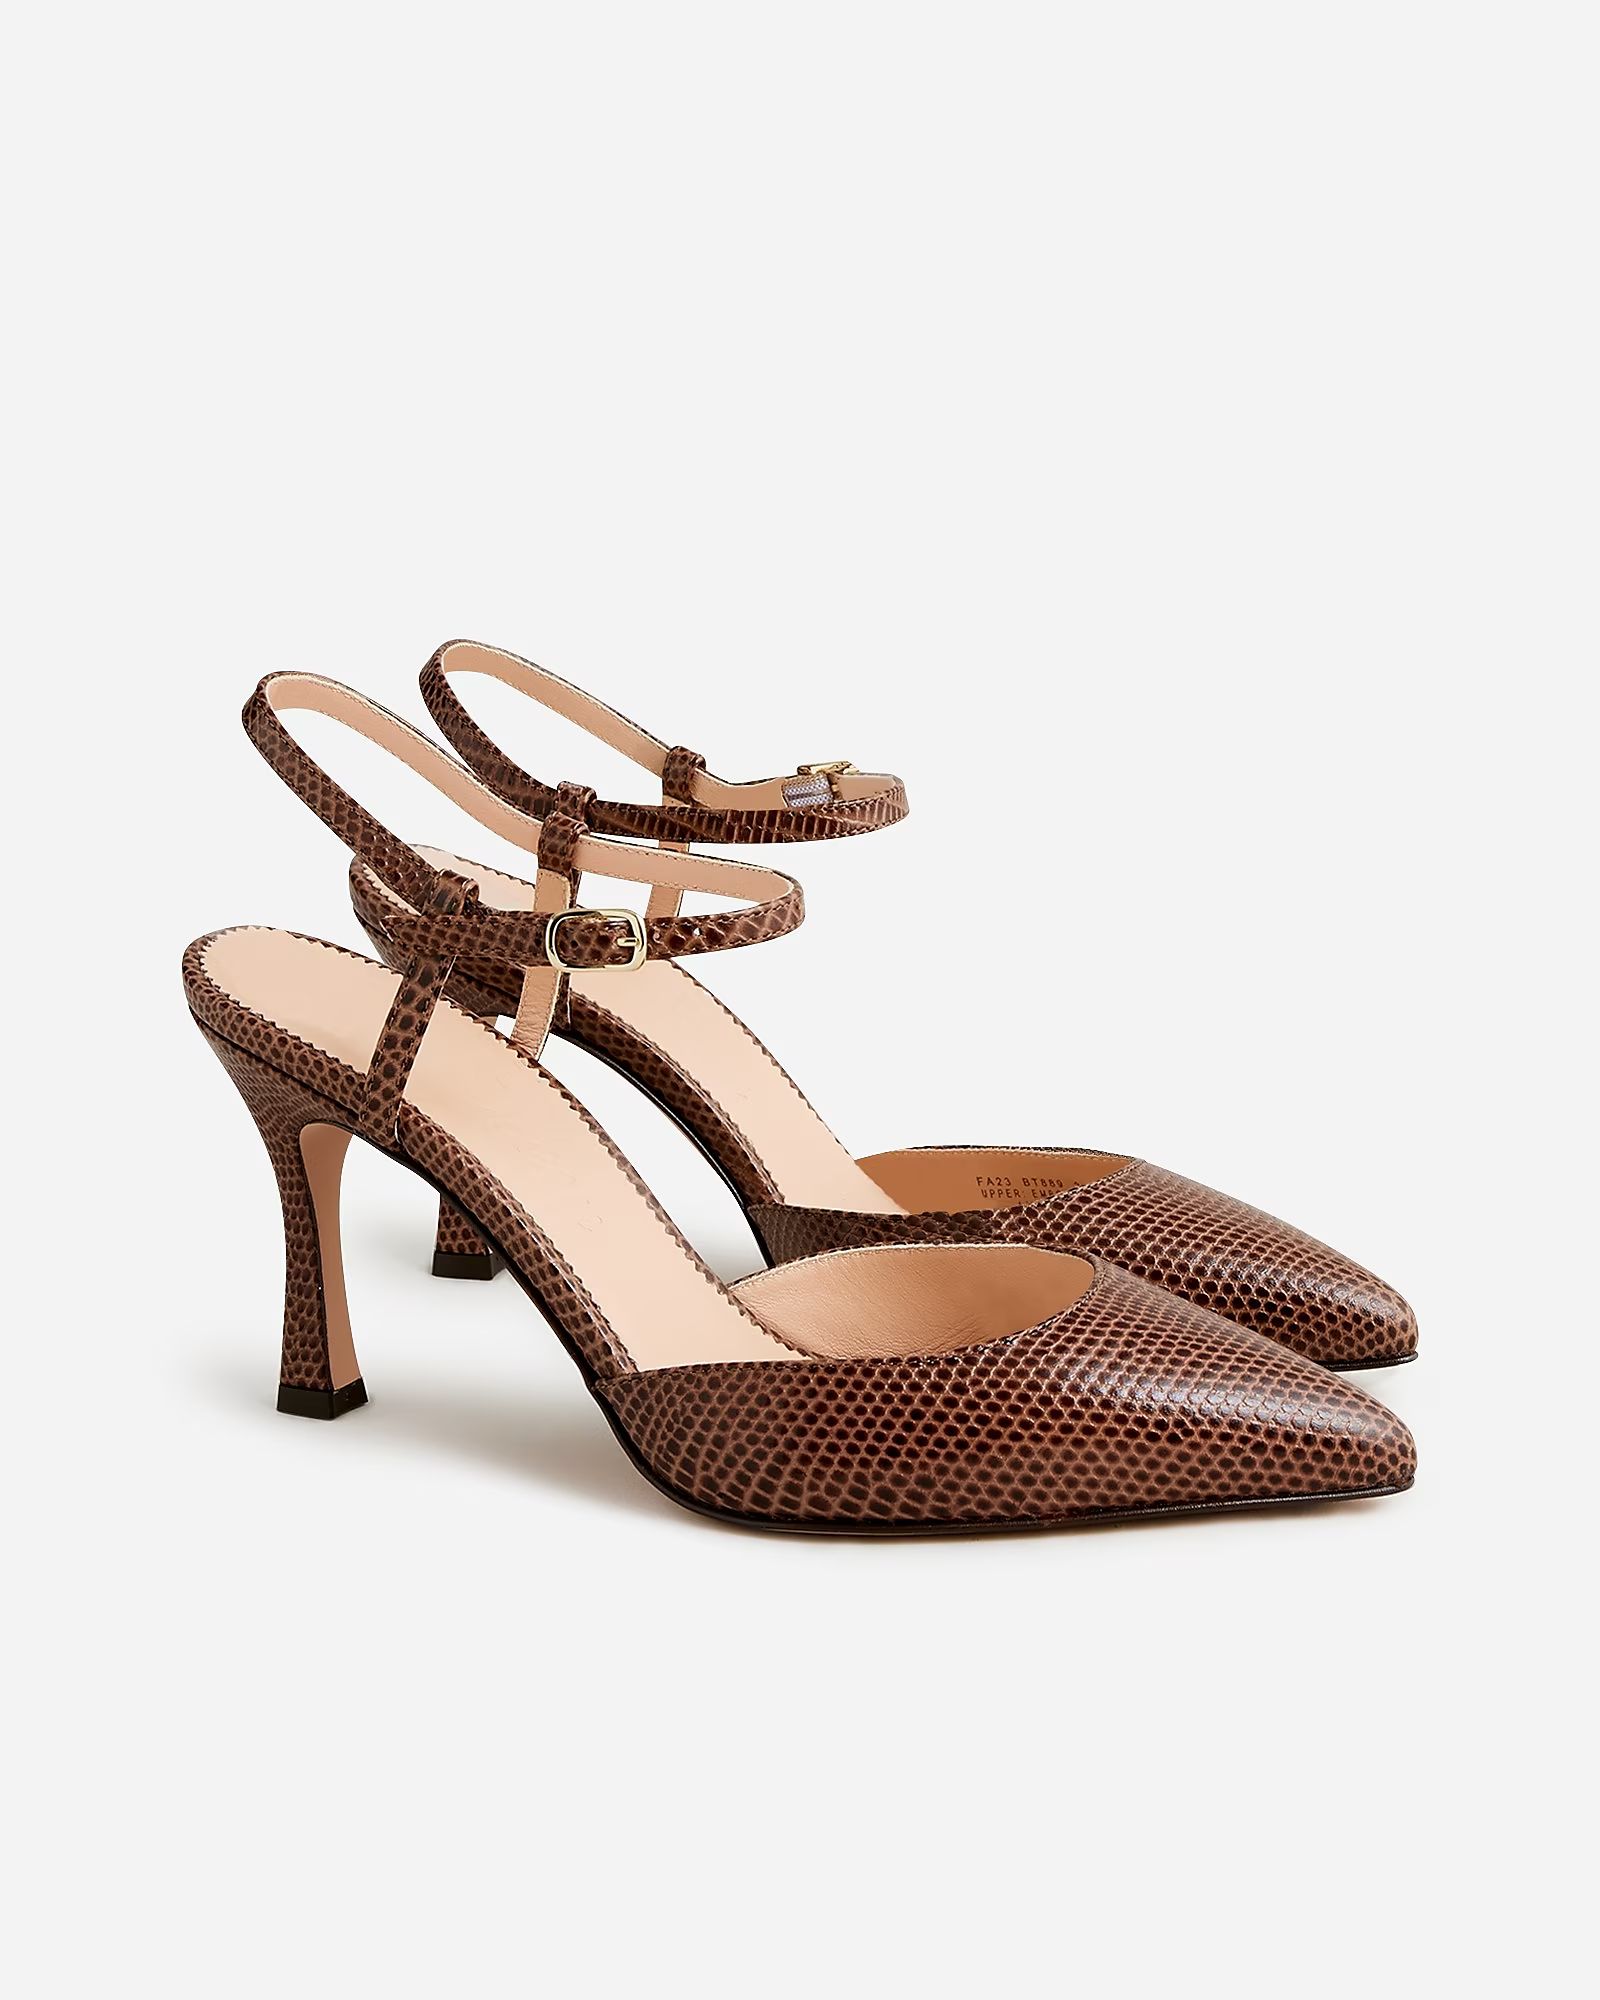 Elsie Made-in-Italy lizard-embossed leather heels | J.Crew US